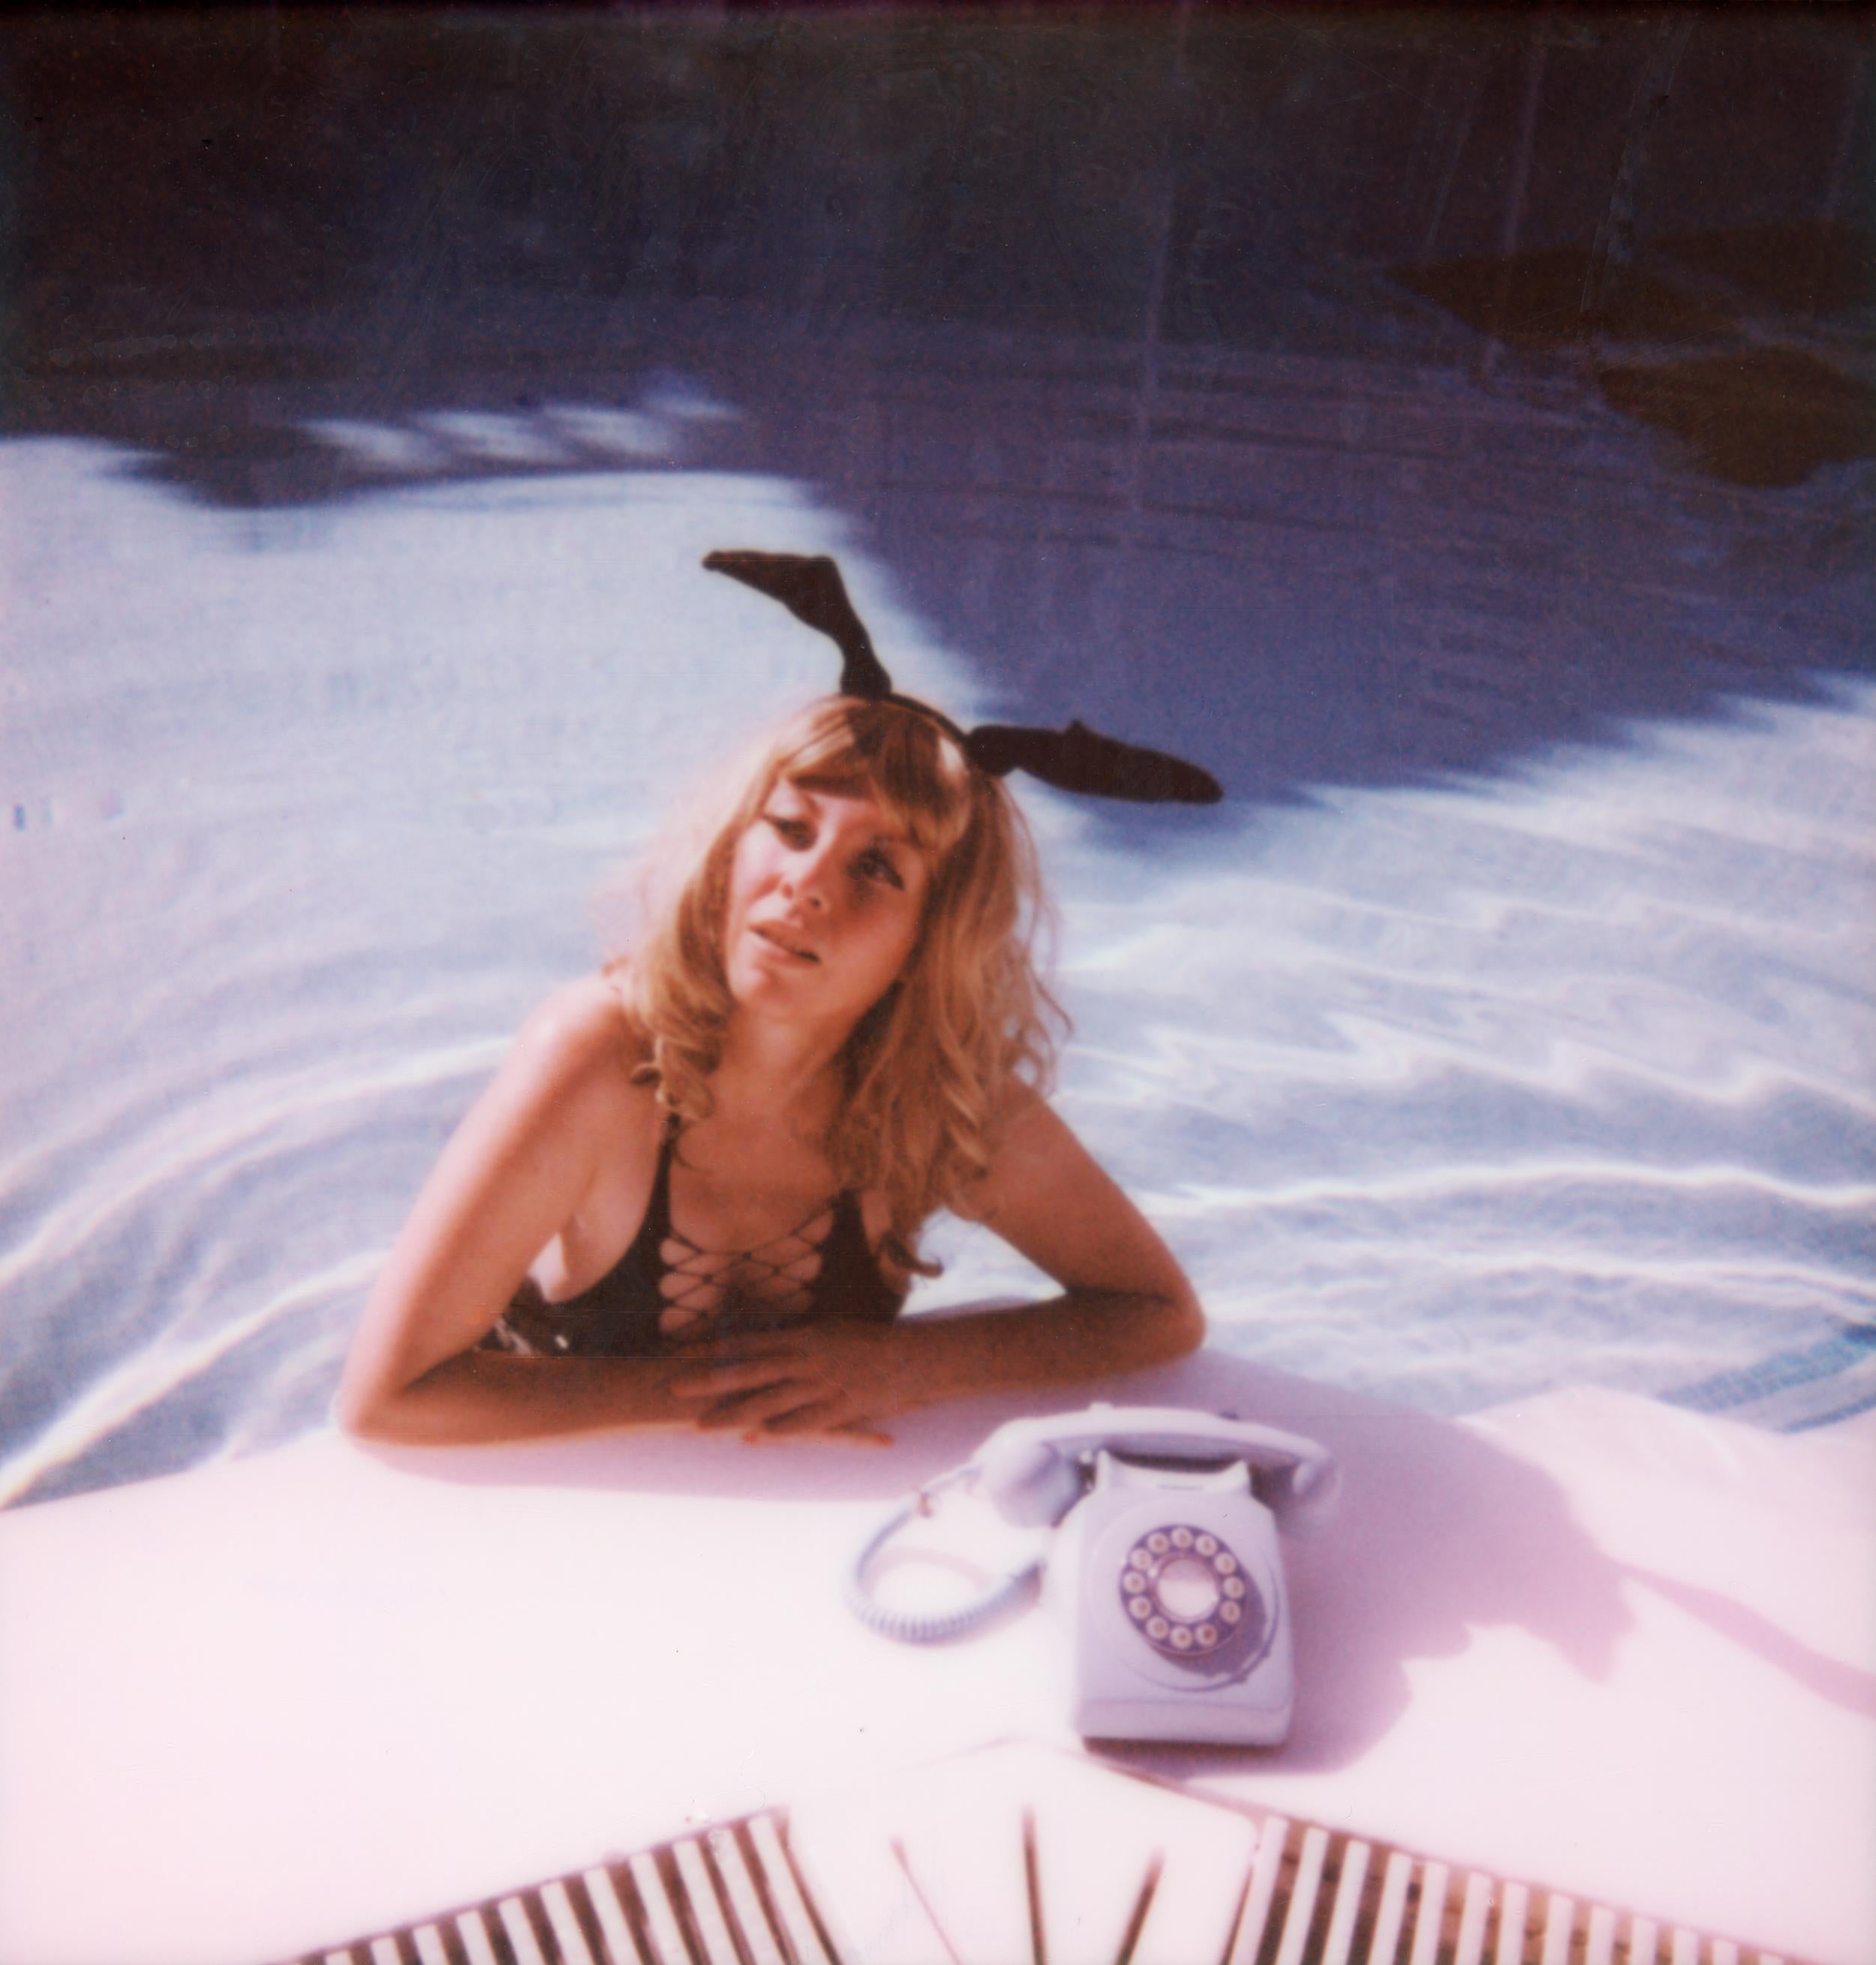 Pool Bunny - Contemporain, Polaroid, Femme, 21e siècle, Nu, Psychénie